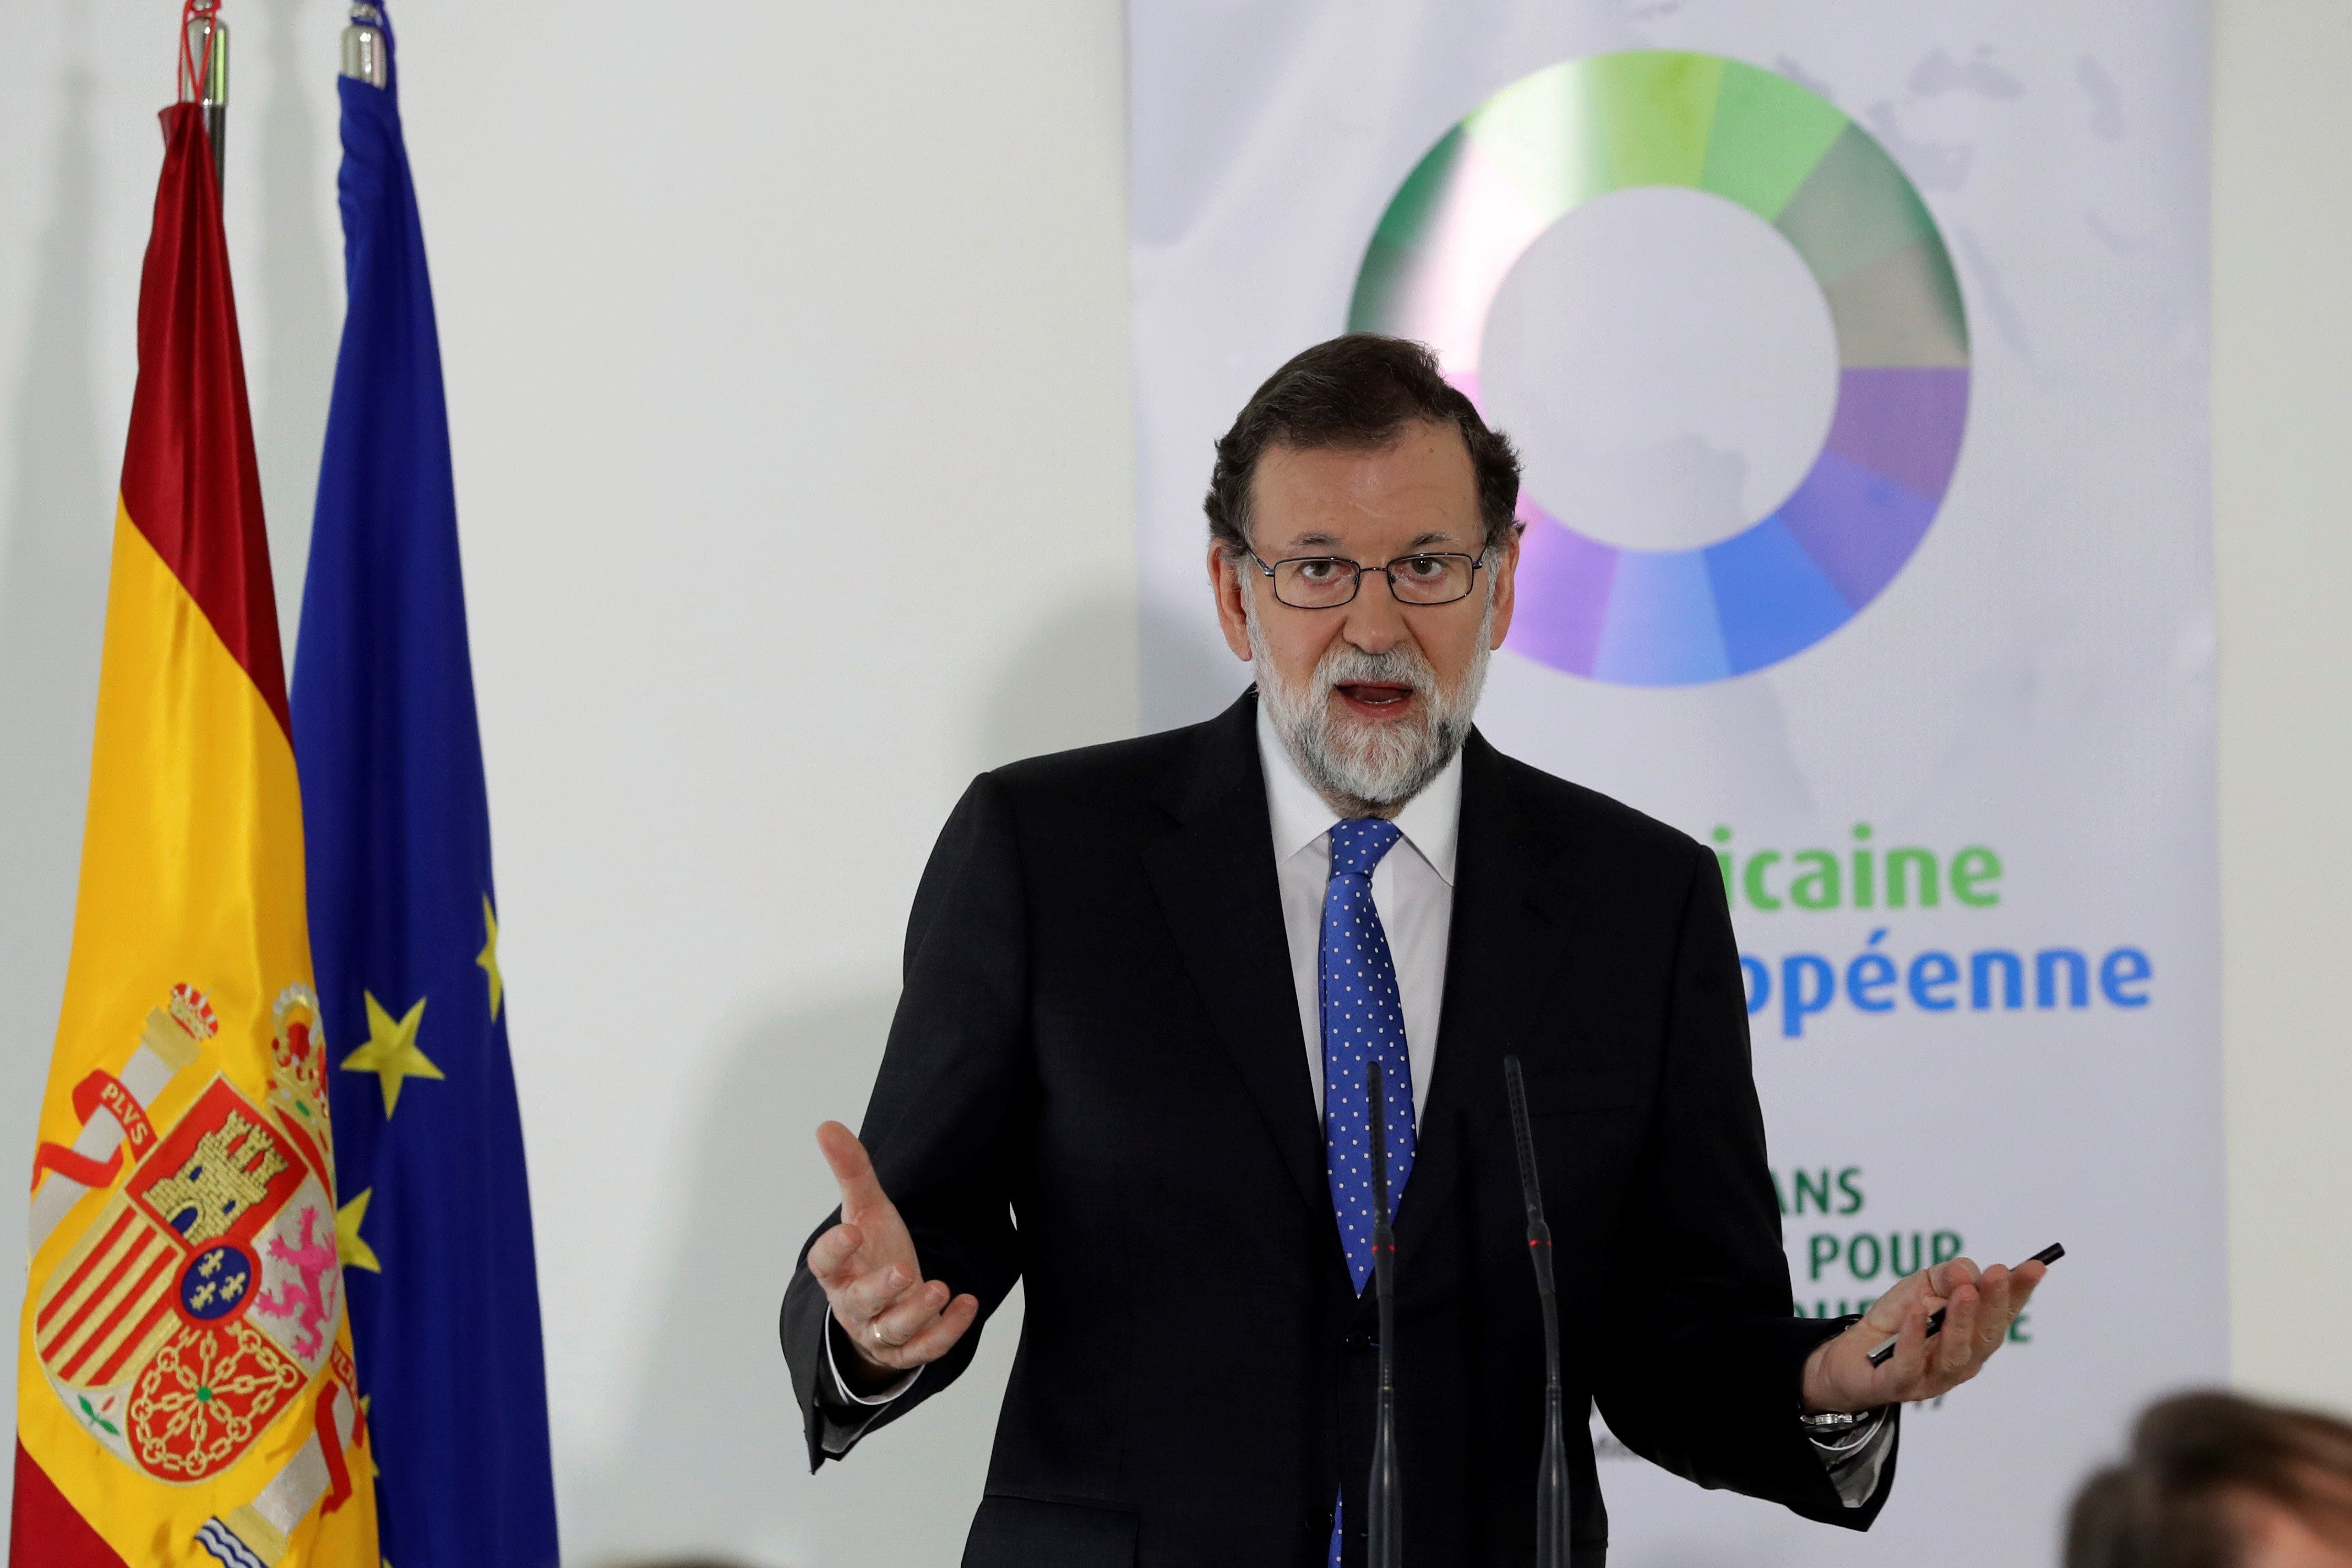 Rajoy respon a Iglesias sobre el recurs al 155: "És absurd"